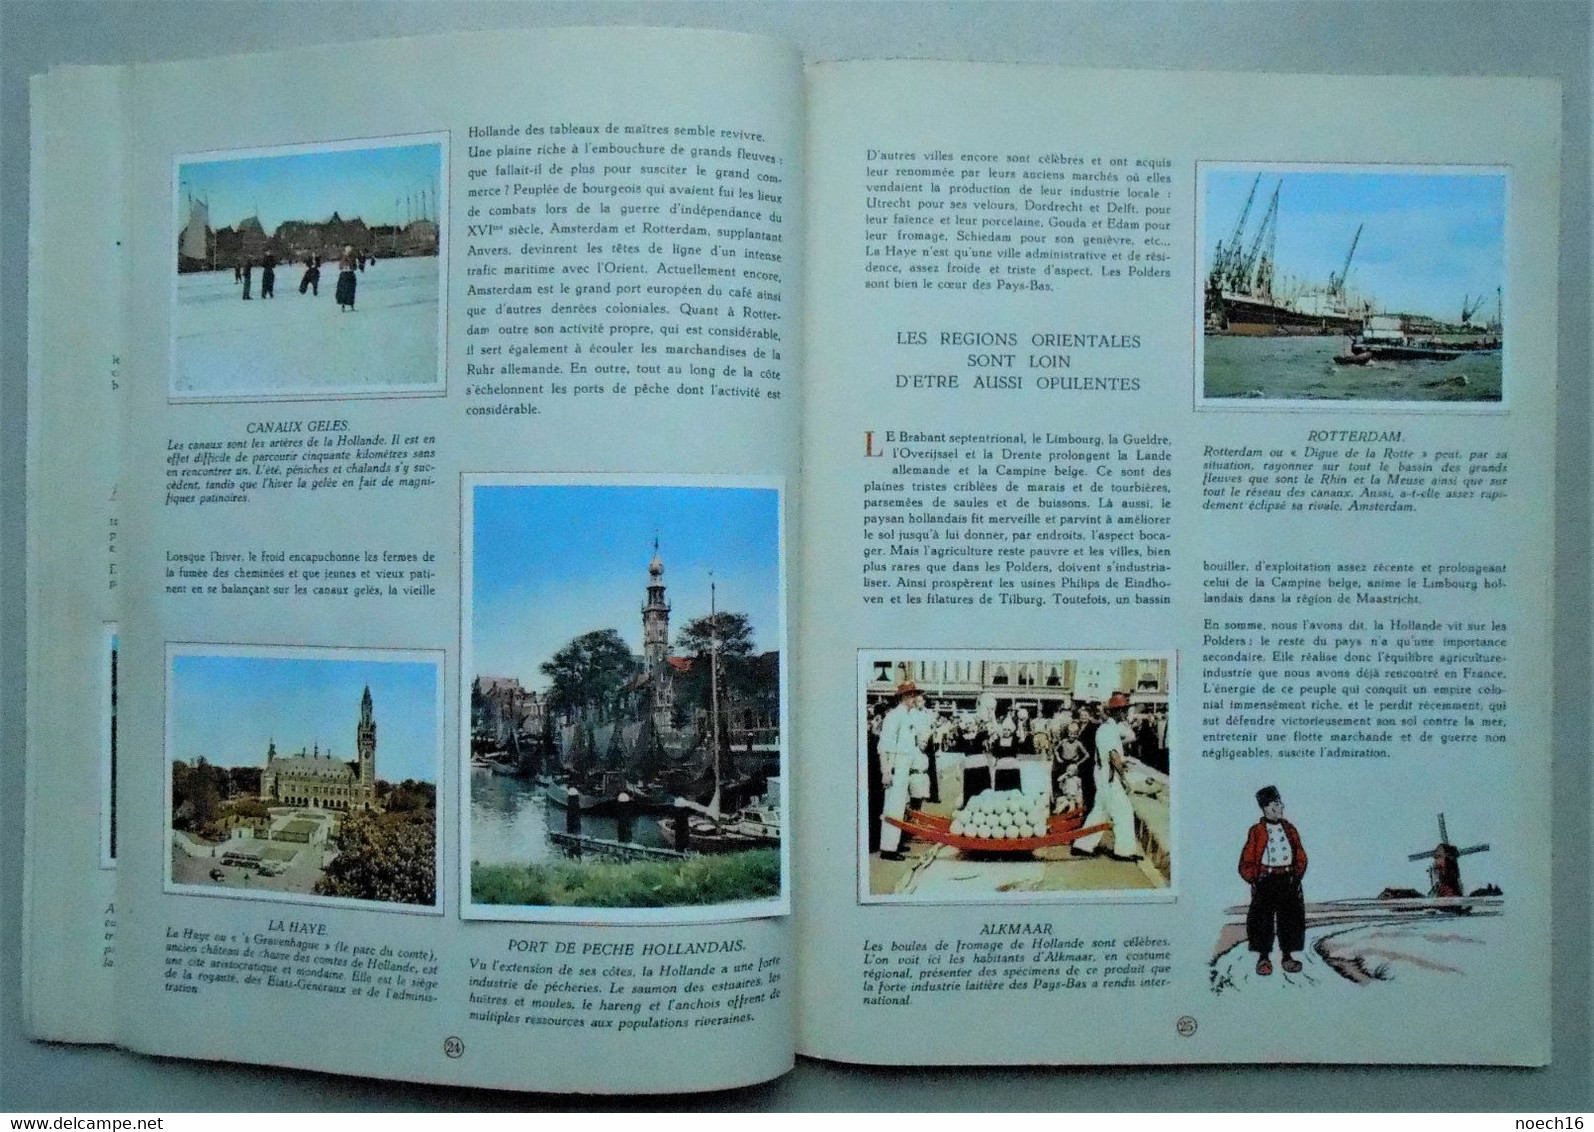 4 Albums chromos complets - La Géographie de l'Europe, 4 tomes - Timbre Tintin, Editions du Lombard